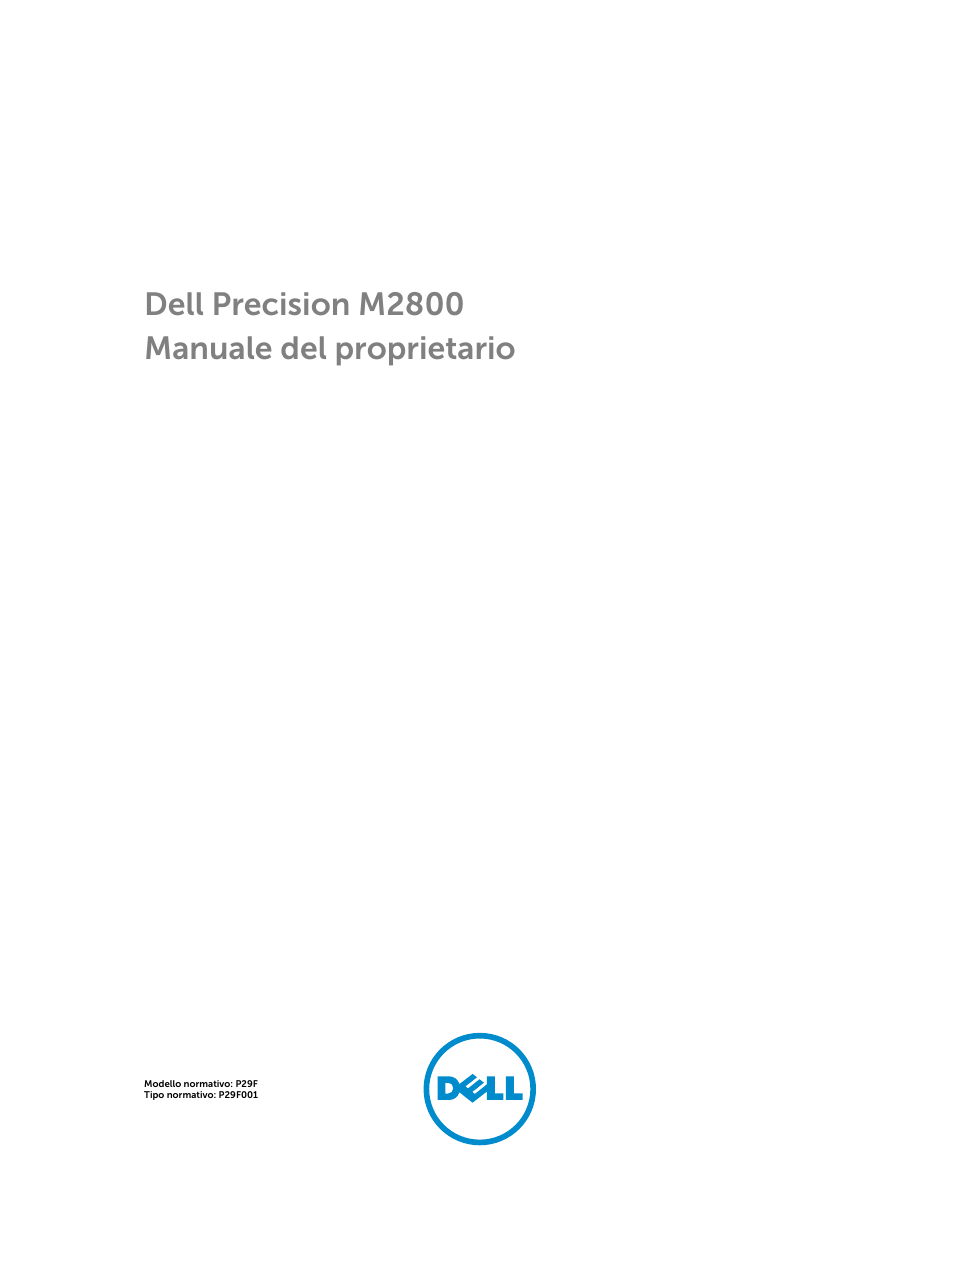 Dell Precision M2800 (Early 2014) Manuale d'uso | Pagine: 81